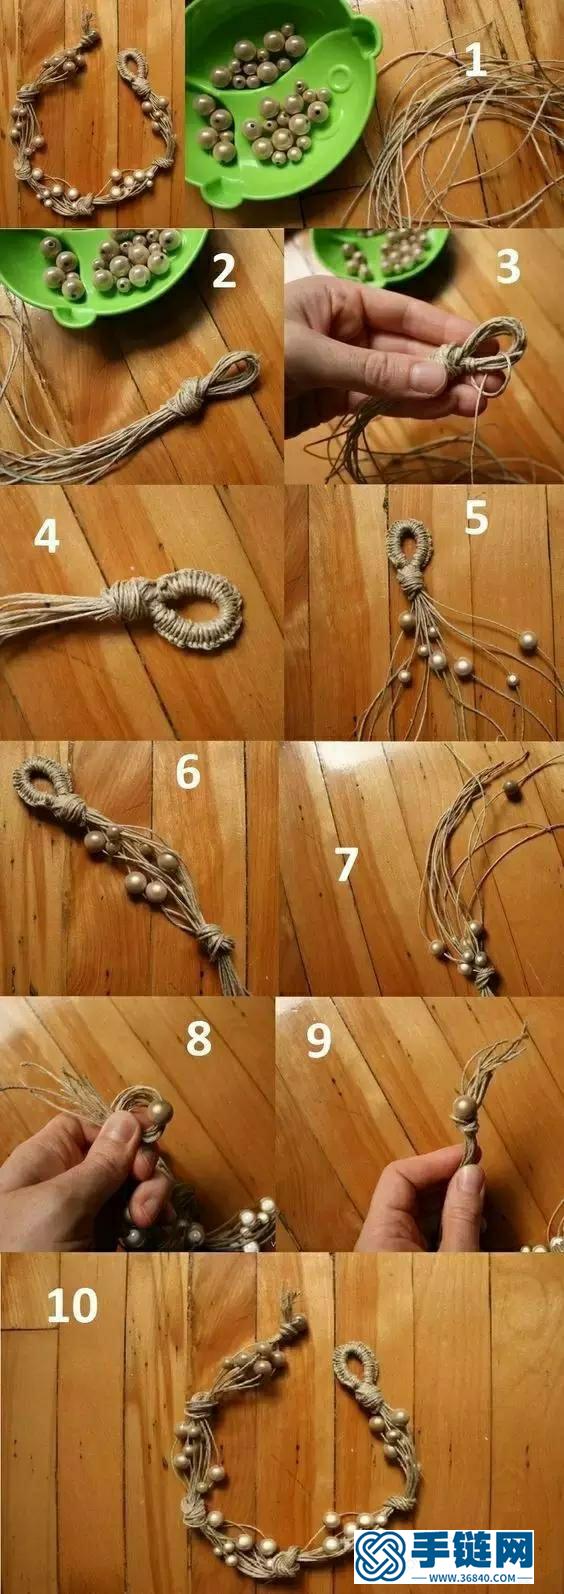 29种编绳手链教程，详细清楚热门款式的图解